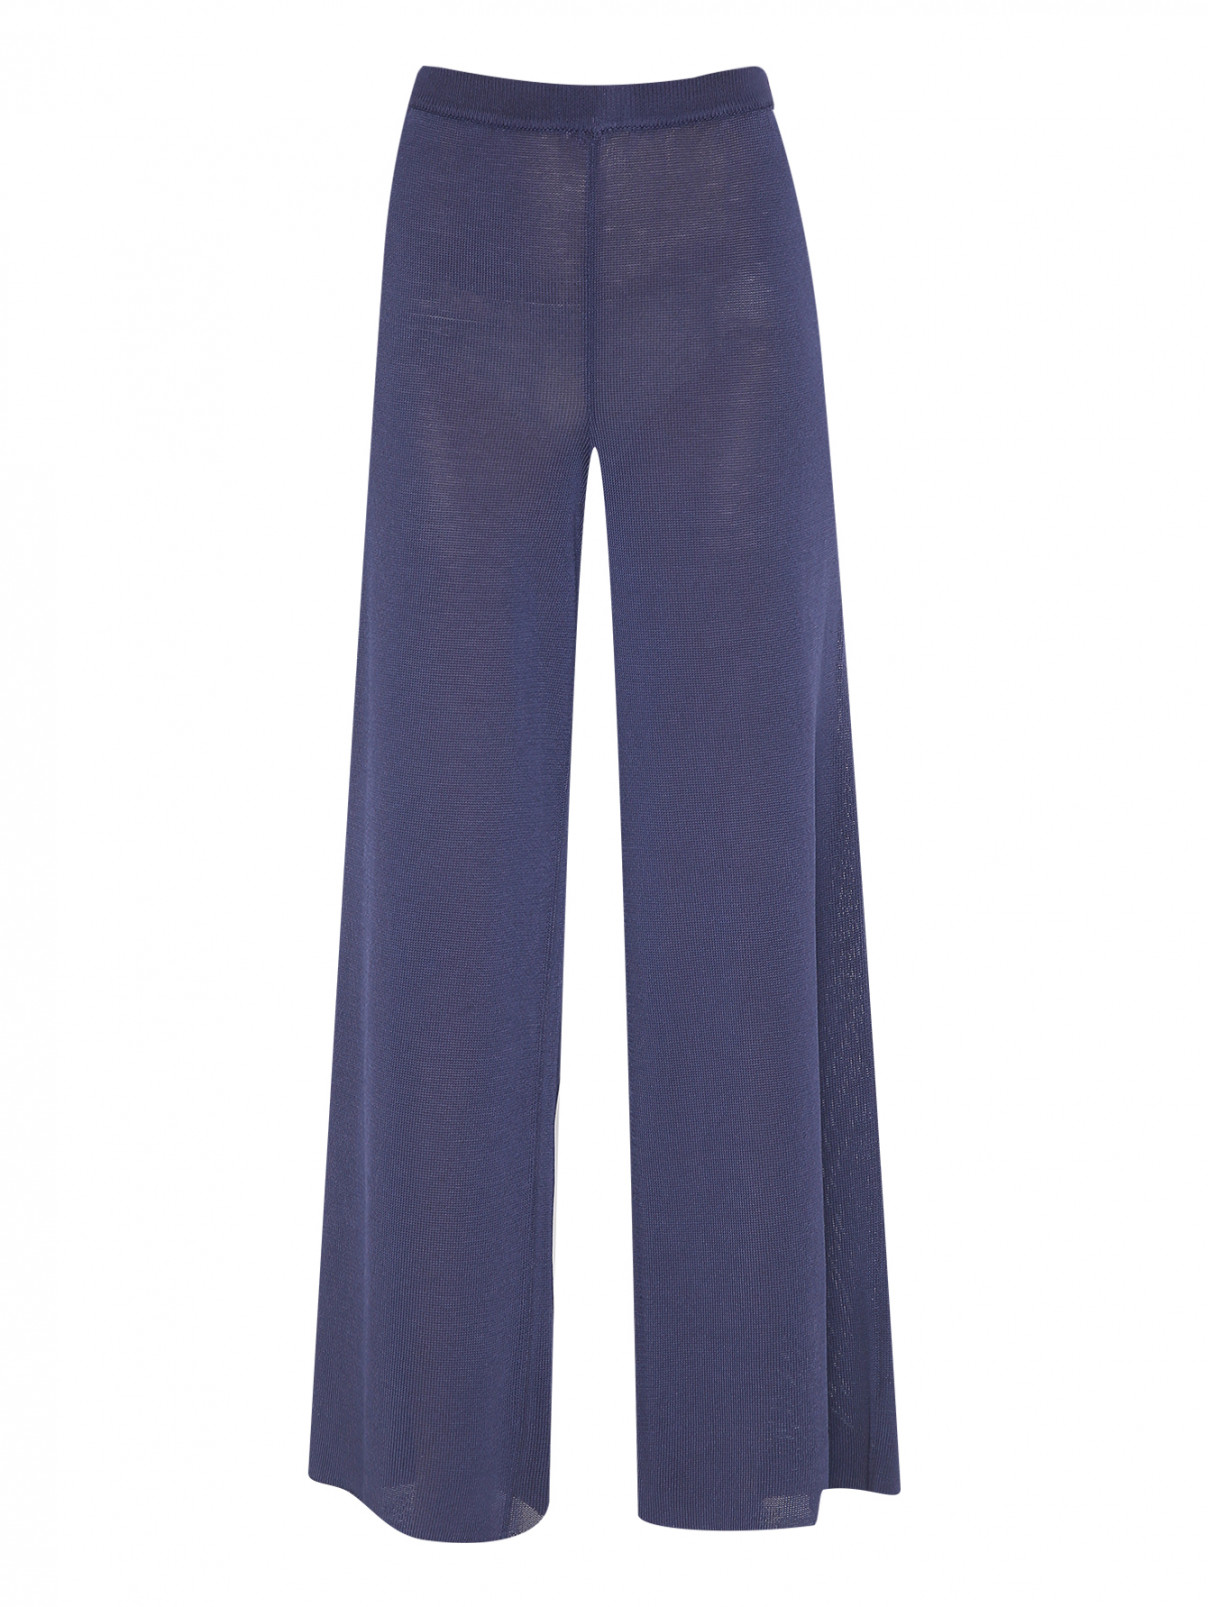 Трикотажные брюки свободного кроя на резинке Luisa Spagnoli  –  Общий вид  – Цвет:  Синий